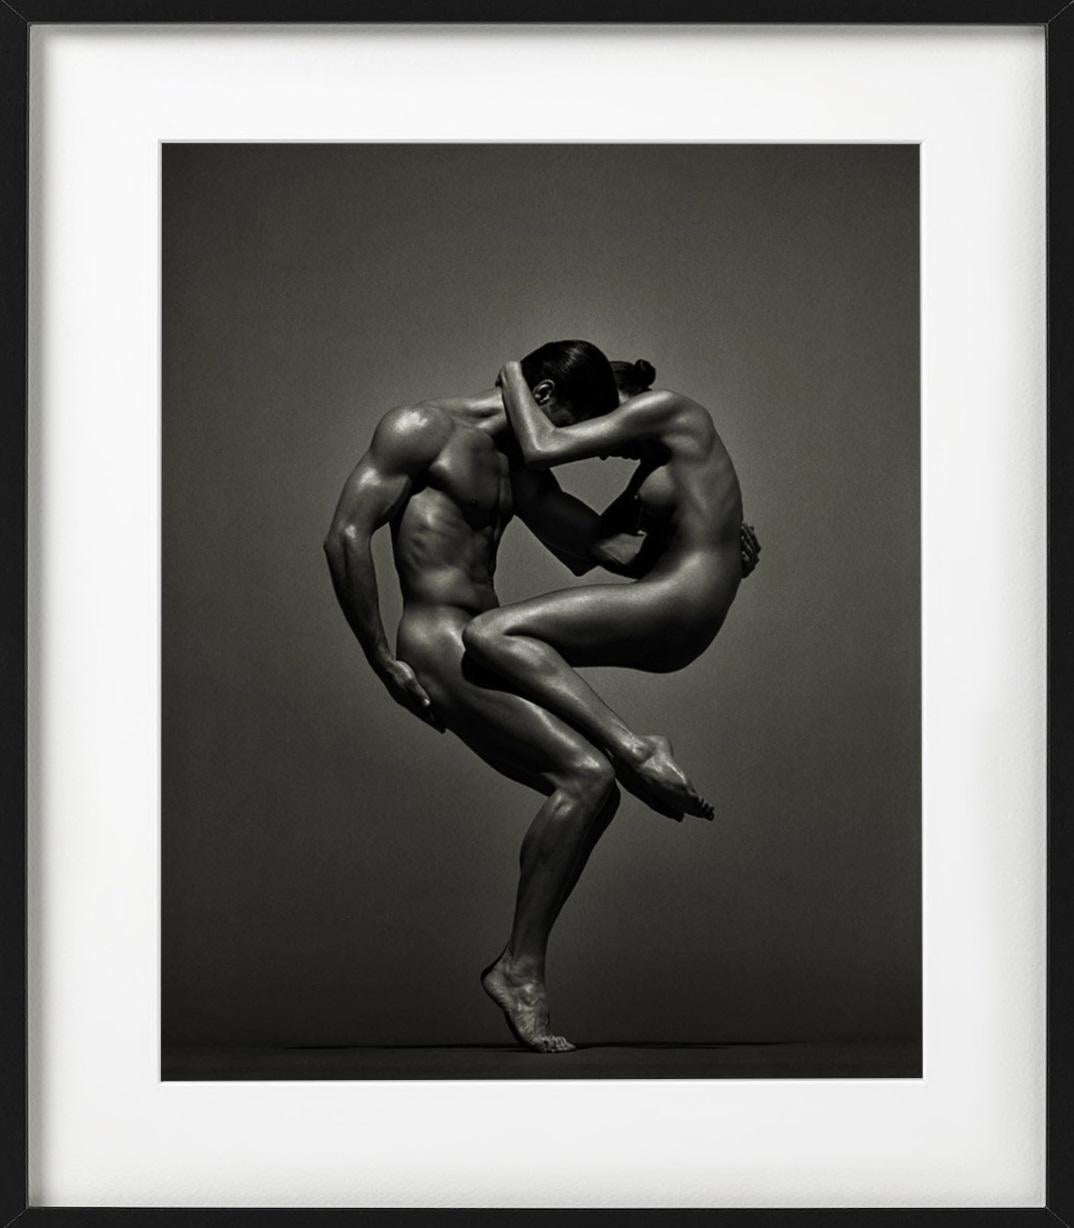 Sina&Anthony, Vienne - deux nus dans une pose athlétique, photographie d'art, 1995 - Noir Figurative Photograph par Andreas H. Bitesnich